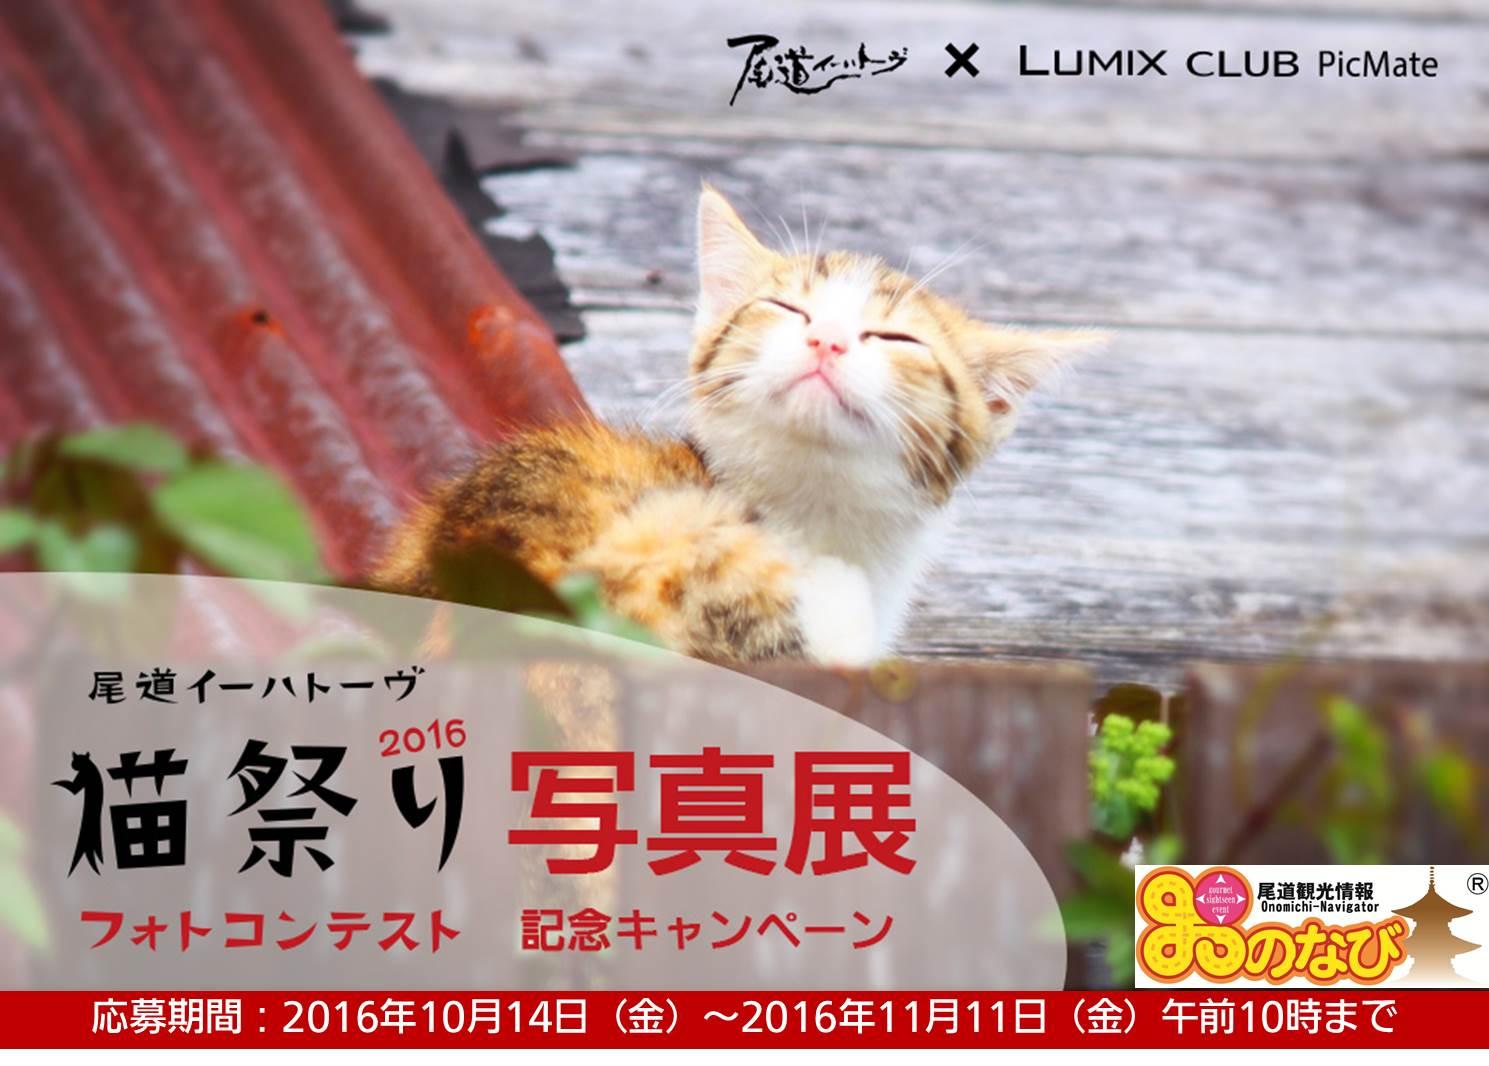 Lumix Club Picmate が東京 丸の内で 尾道イーハトーヴ 猫祭り16 フォトコンテスト写真展 と記念キャンペーンを実施 トピックス Panasonic Newsroom Japan パナソニック ニュースルーム ジャパン